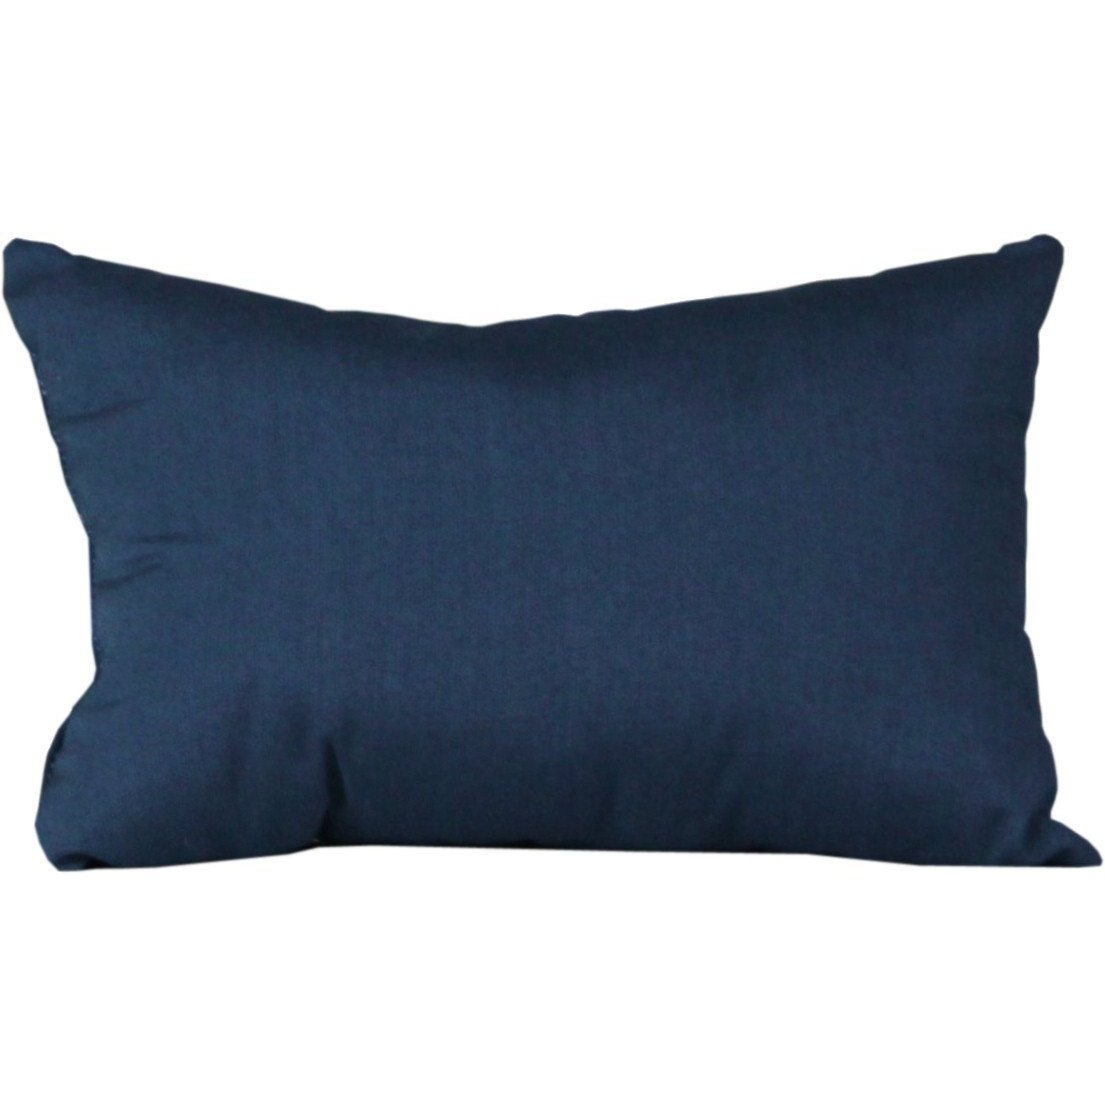 Outdoor Lumbar Pillow Spectrum Indigo